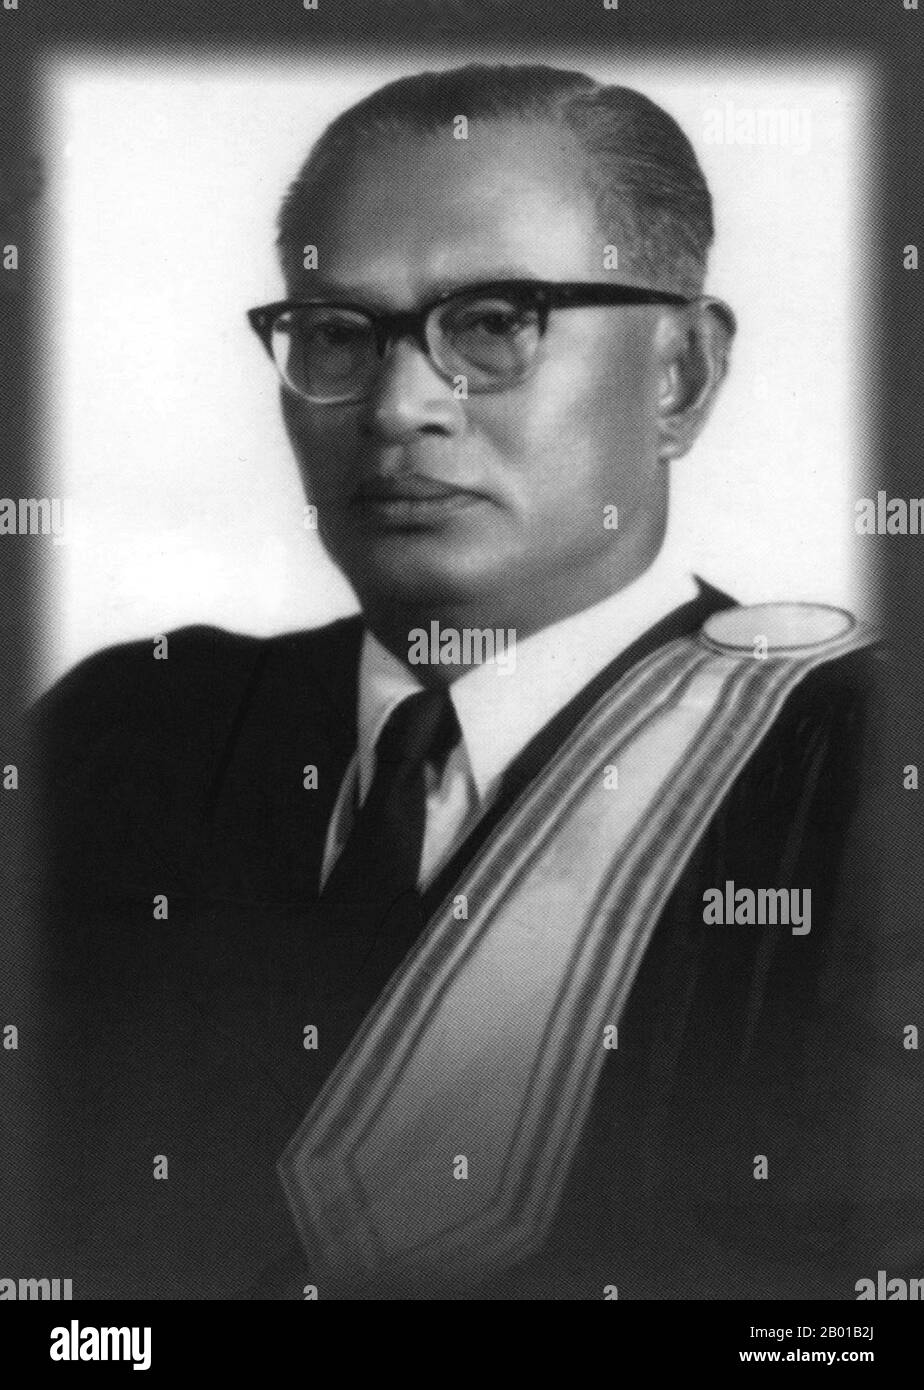 Thailandia: Sanya Thammasak (5 aprile 1907 - 6 gennaio 2002), primo ministro della Thailandia (r. 1973-1975), c.. 1950s. Il professor Sanya Dharmasakti, o Sanya Thammasak, era una delle figure politiche più influenti in Thailandia. Fu presidente della Corte Suprema (1968-1973), decano della facoltà di giurisprudenza e cancelliere dell'Università di Thammasat, vice presidente del congresso costituzionale e primo ministro (per comando reale) dal 1973 al 1975. Nel 1975 ordinò il ritiro di tutte le forze statunitensi dalla Thailandia nell'operazione Palace Lightning, dopo la caduta di Phnom Penh e Saigon. Foto Stock